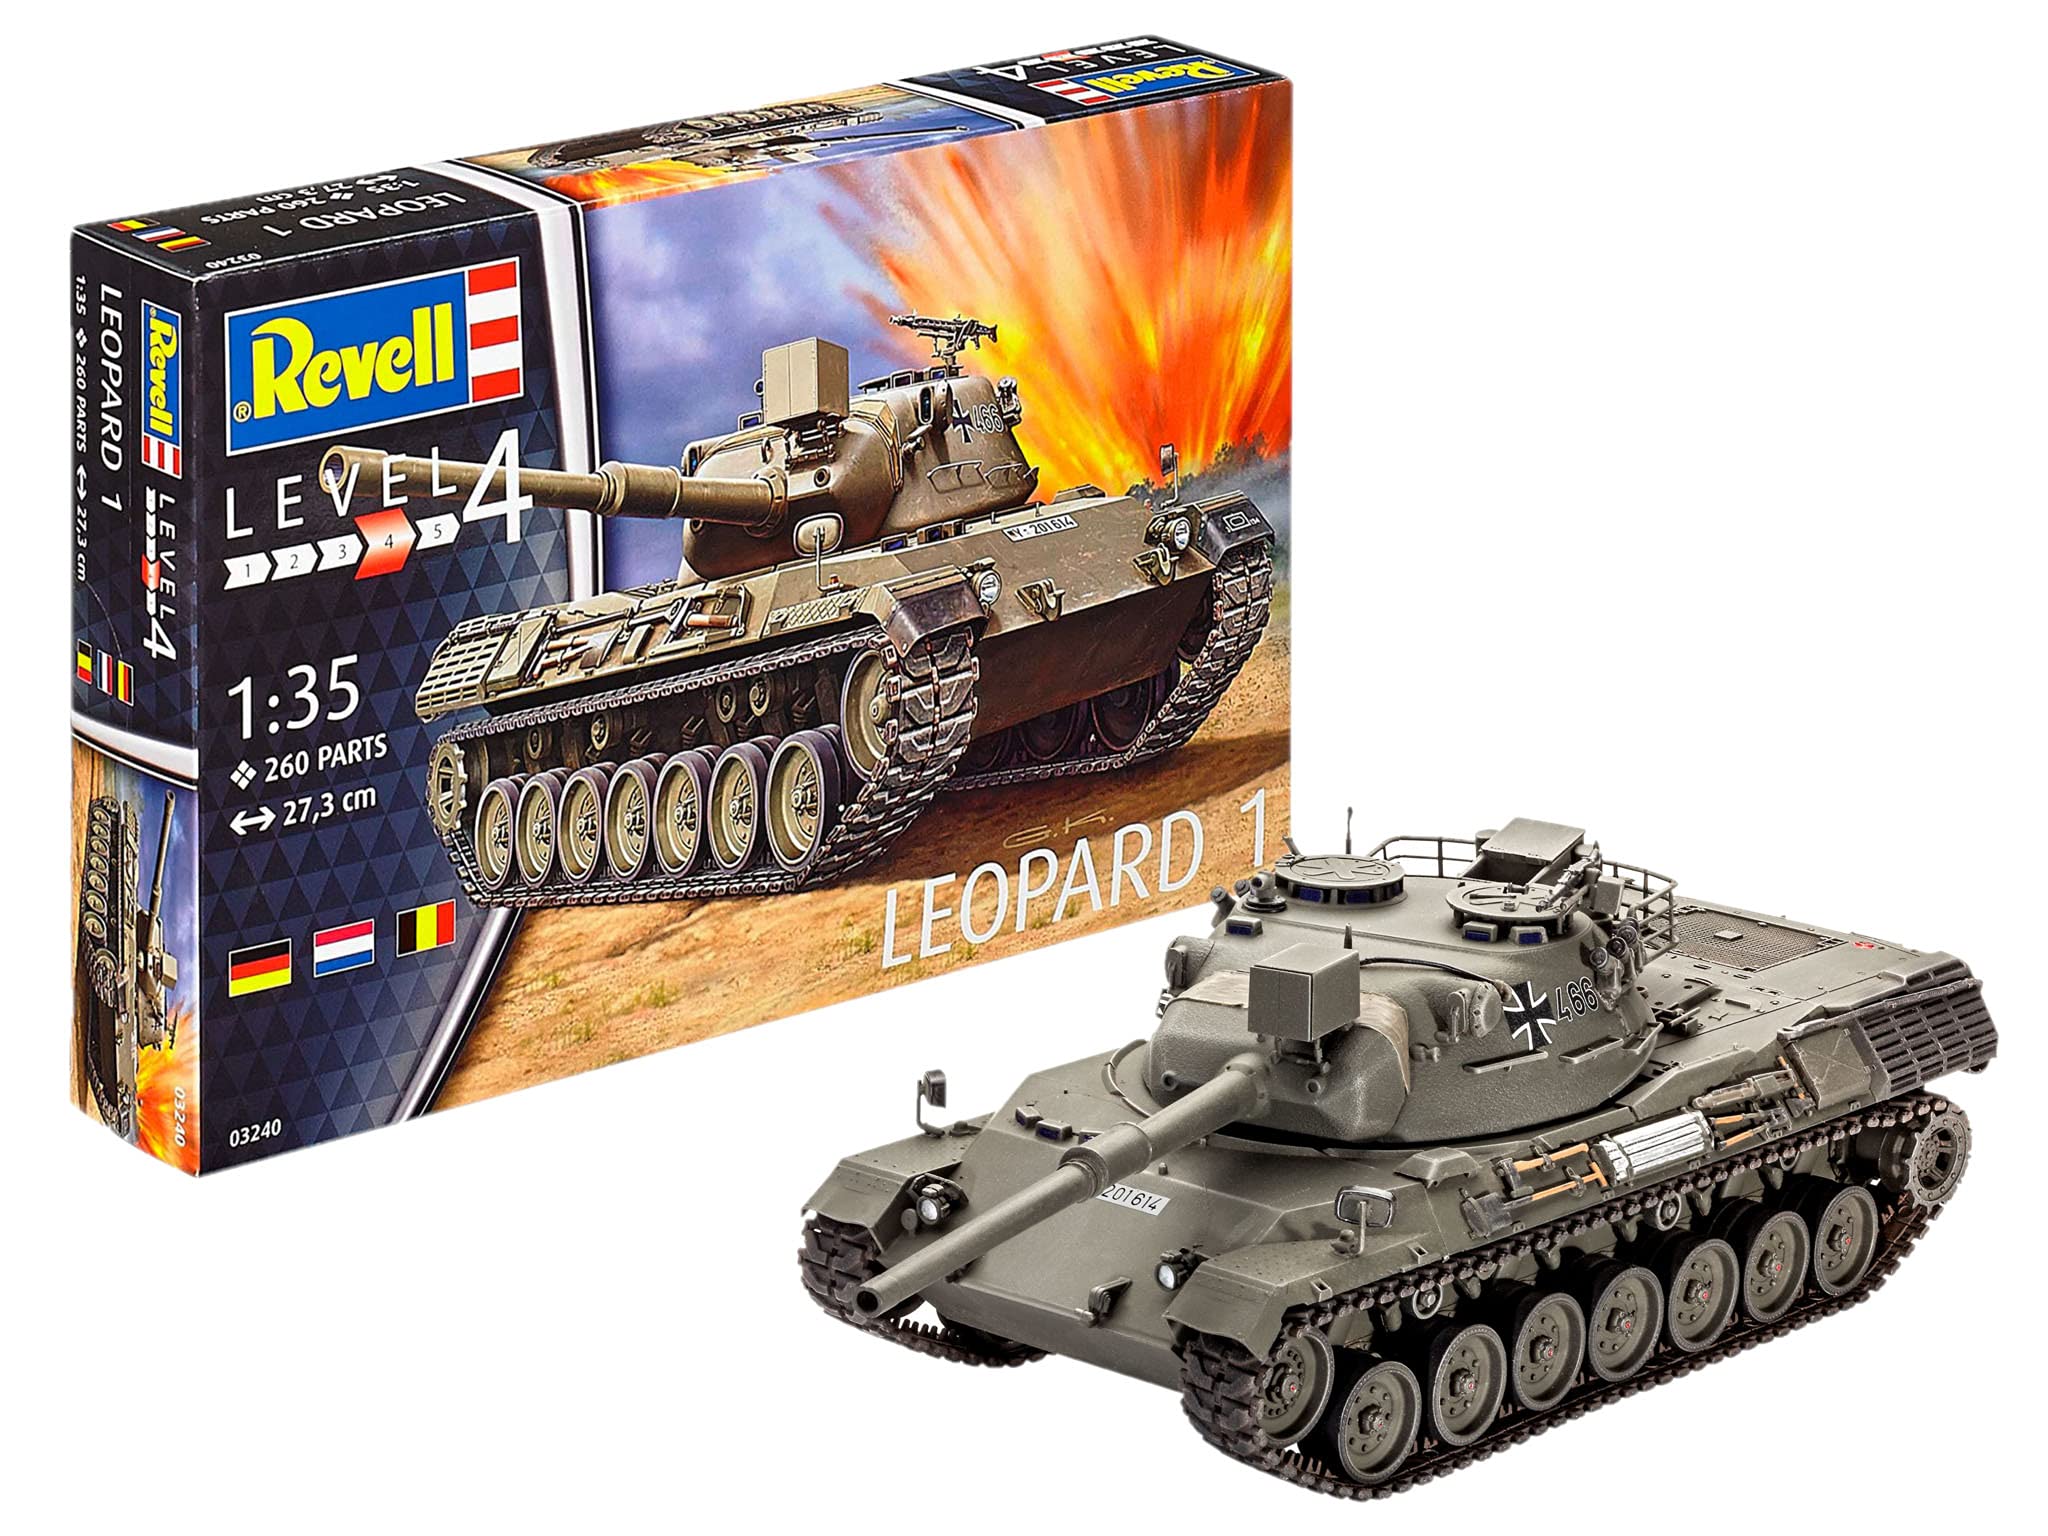 acheter Revell- Char de Combat Leopard 1 échelle 1/35 27,3 cm Maquette, 03240, Non YvVq2dzJs boutique en ligne